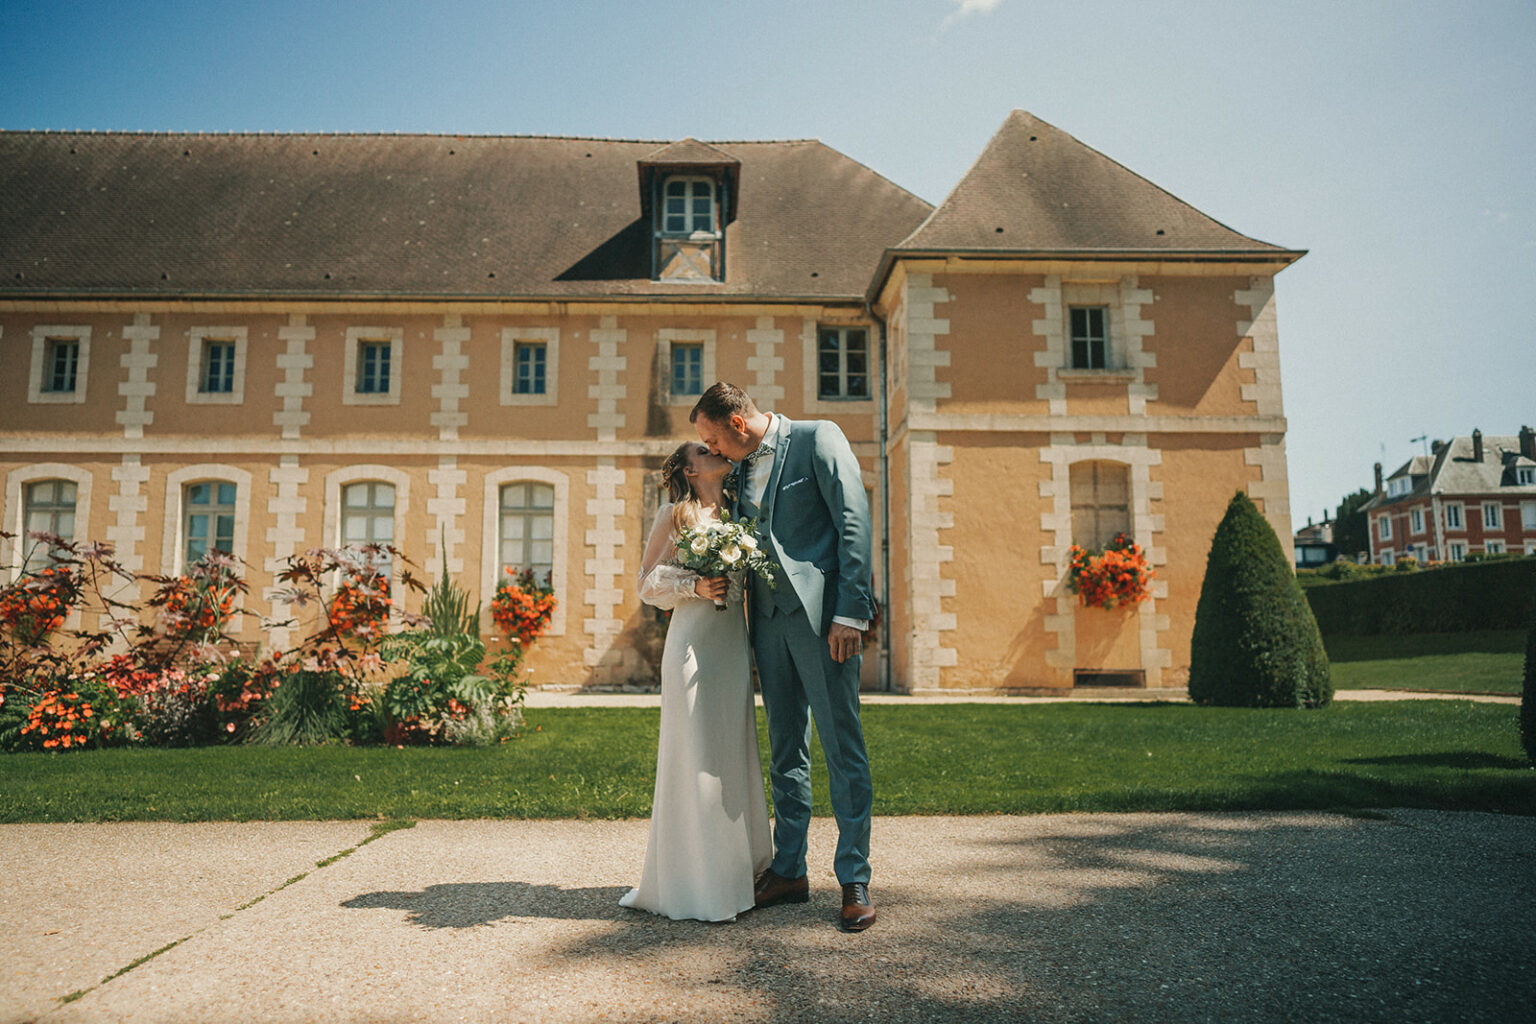 le mariage Fany et Jérémie à Evreux au jardin public par Alain Leprévost photographe vidéaste de mariage en Normandie